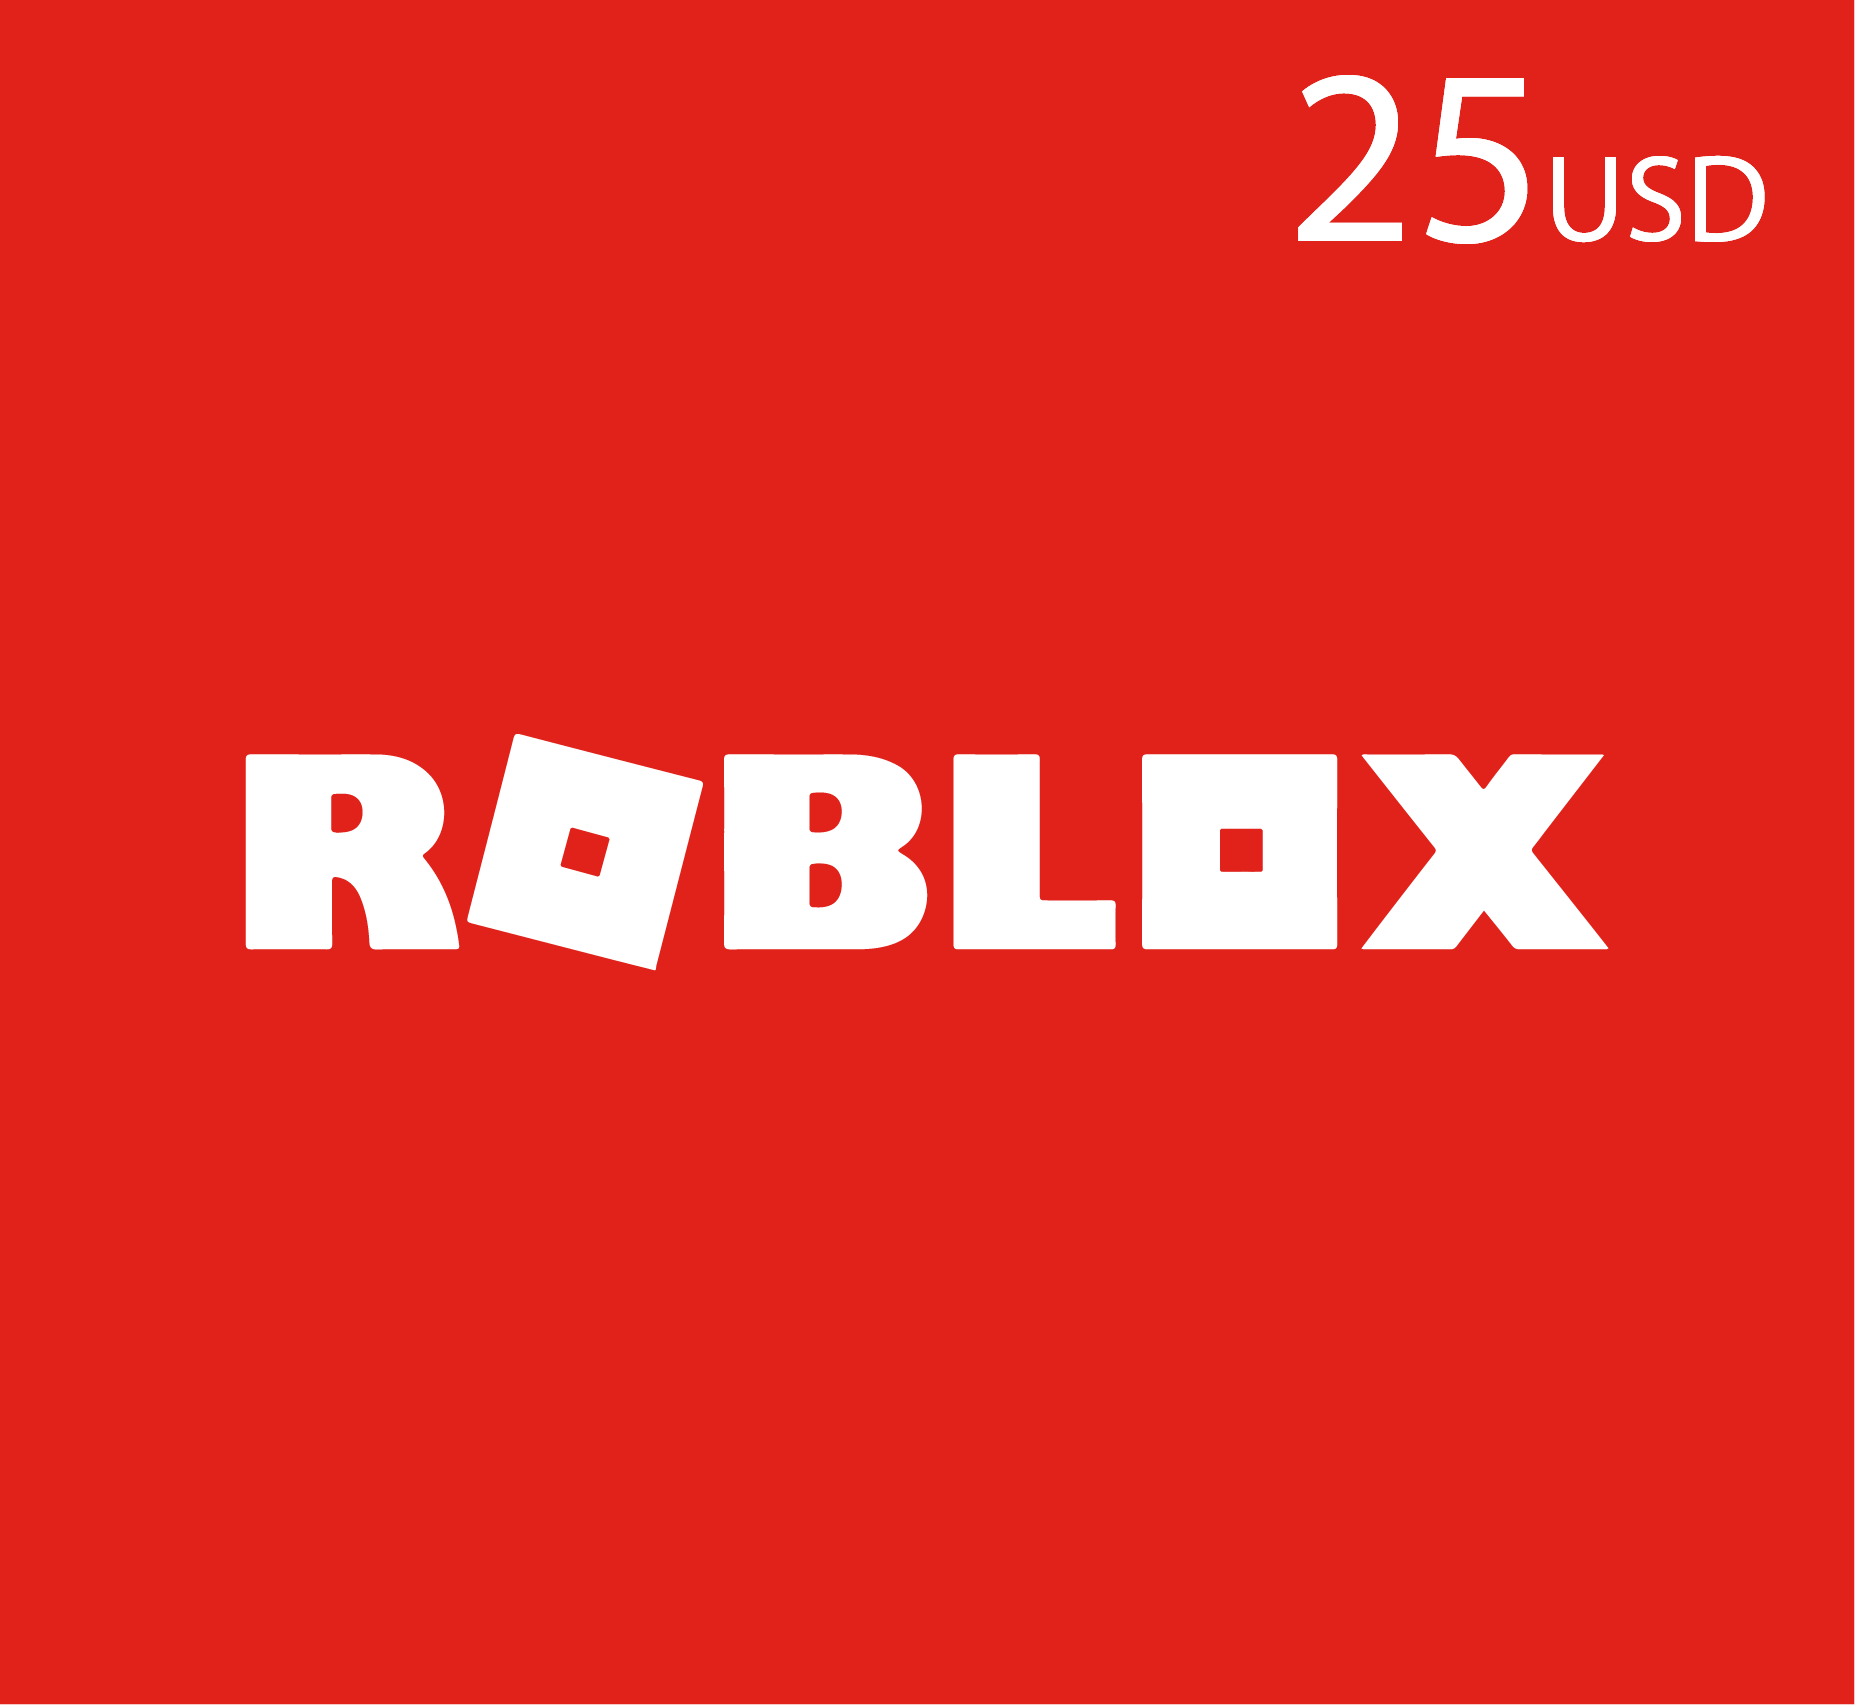 شحن روبلوكس - بطاقة روبلوكس  25 دولار امريكي - (المتجر العالمى)